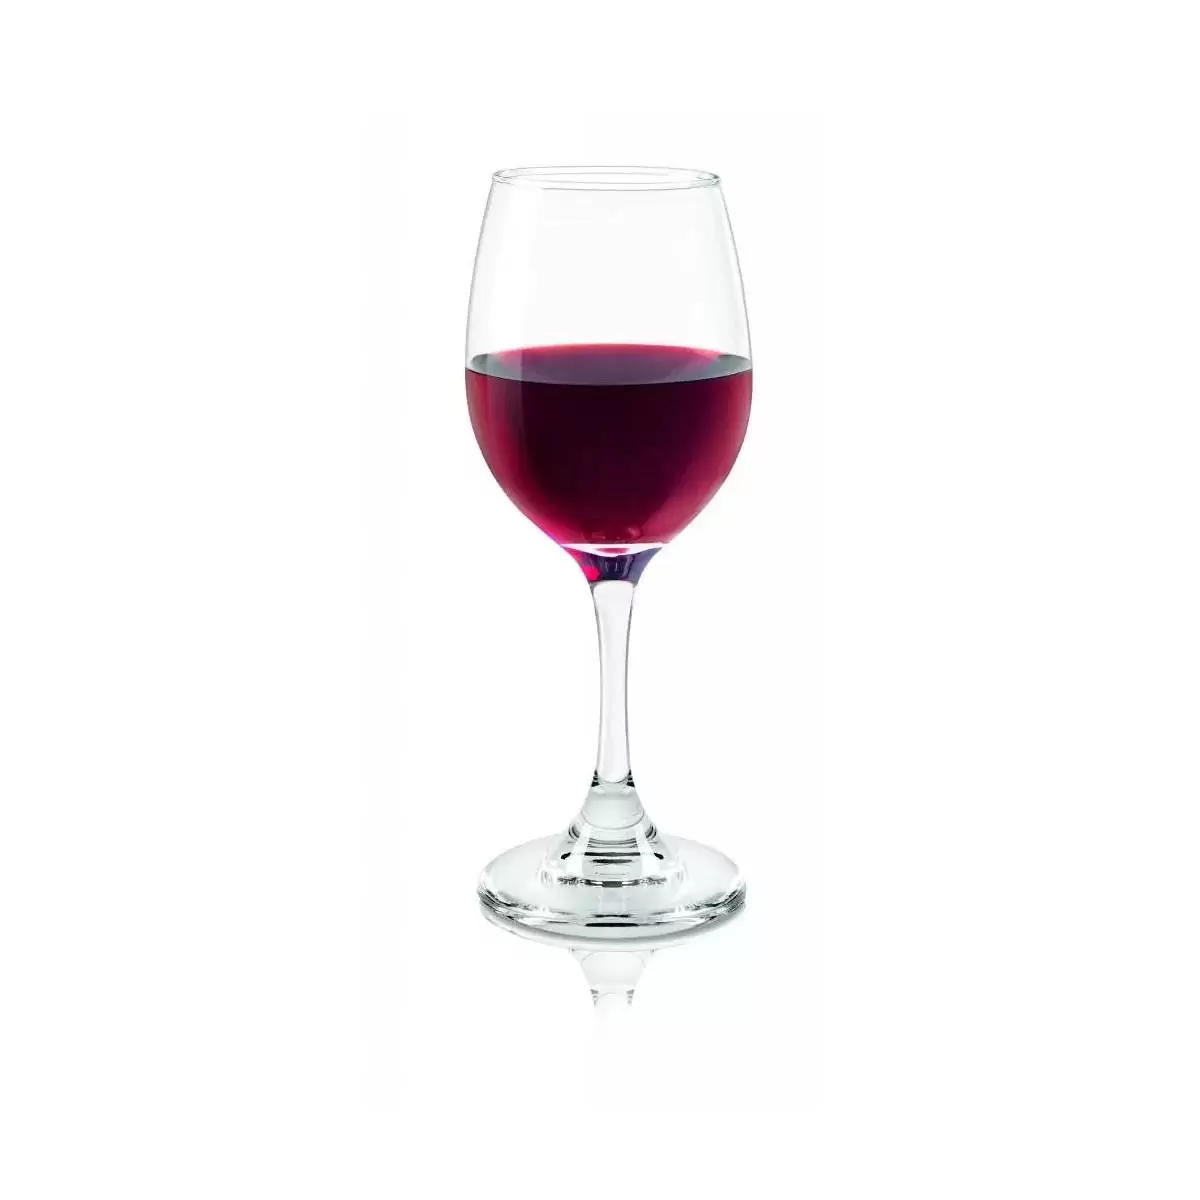 Copa vino tinto rioja 10.5onz cristar